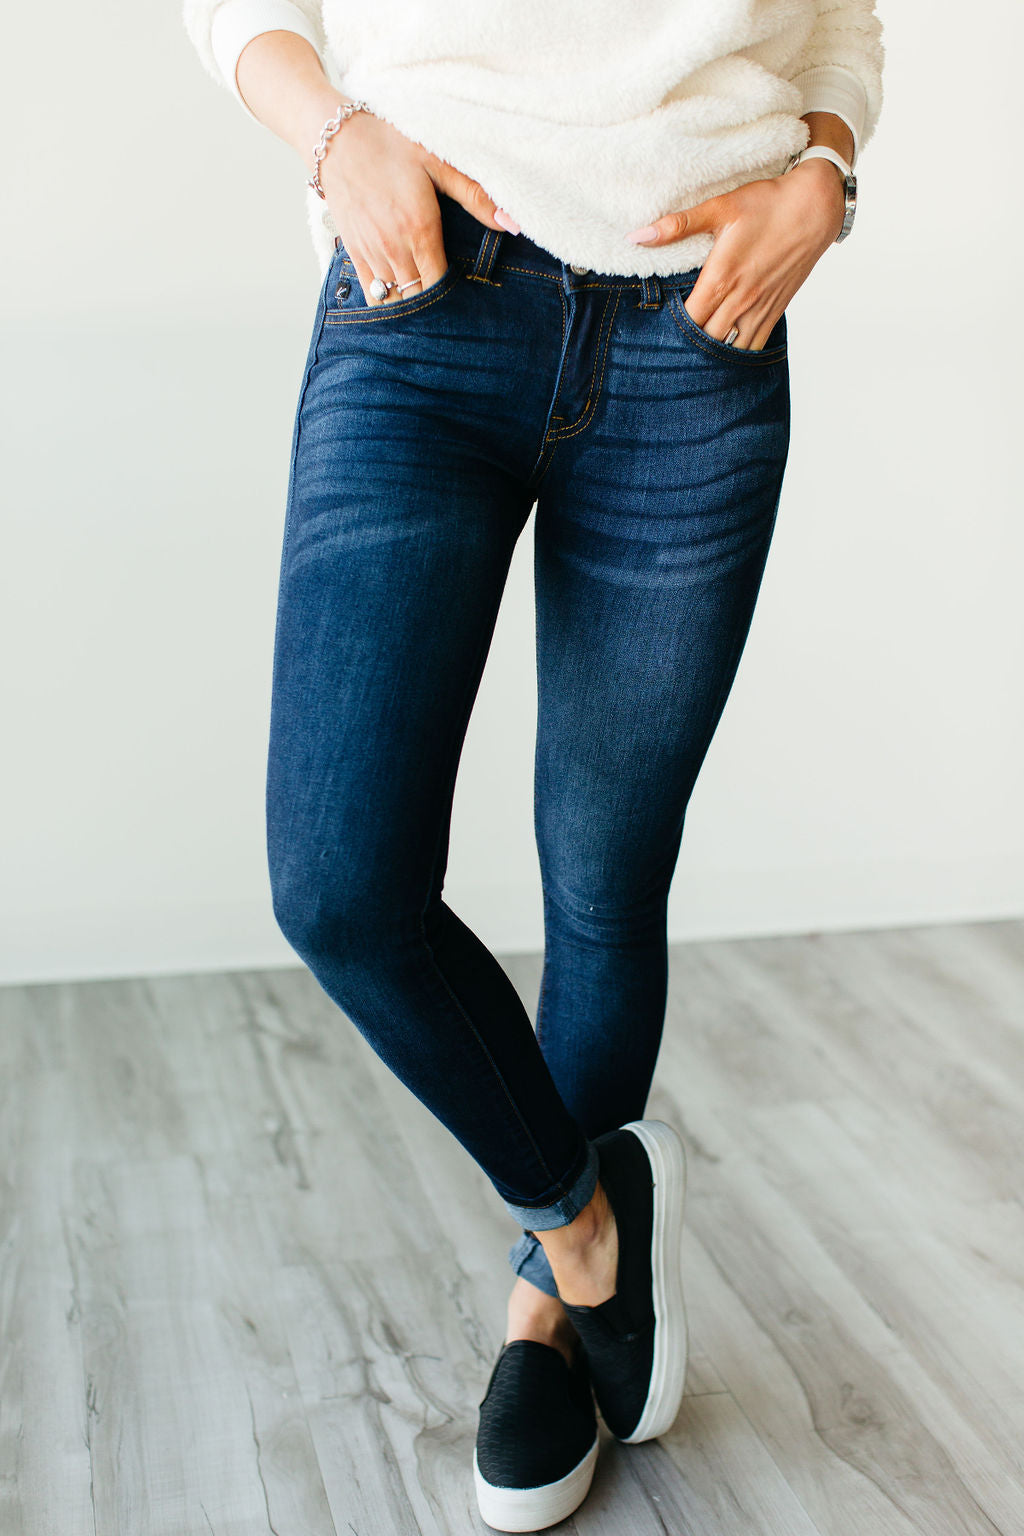 Tried \u0026 True Skinny Jeans – Mindy Mae's 